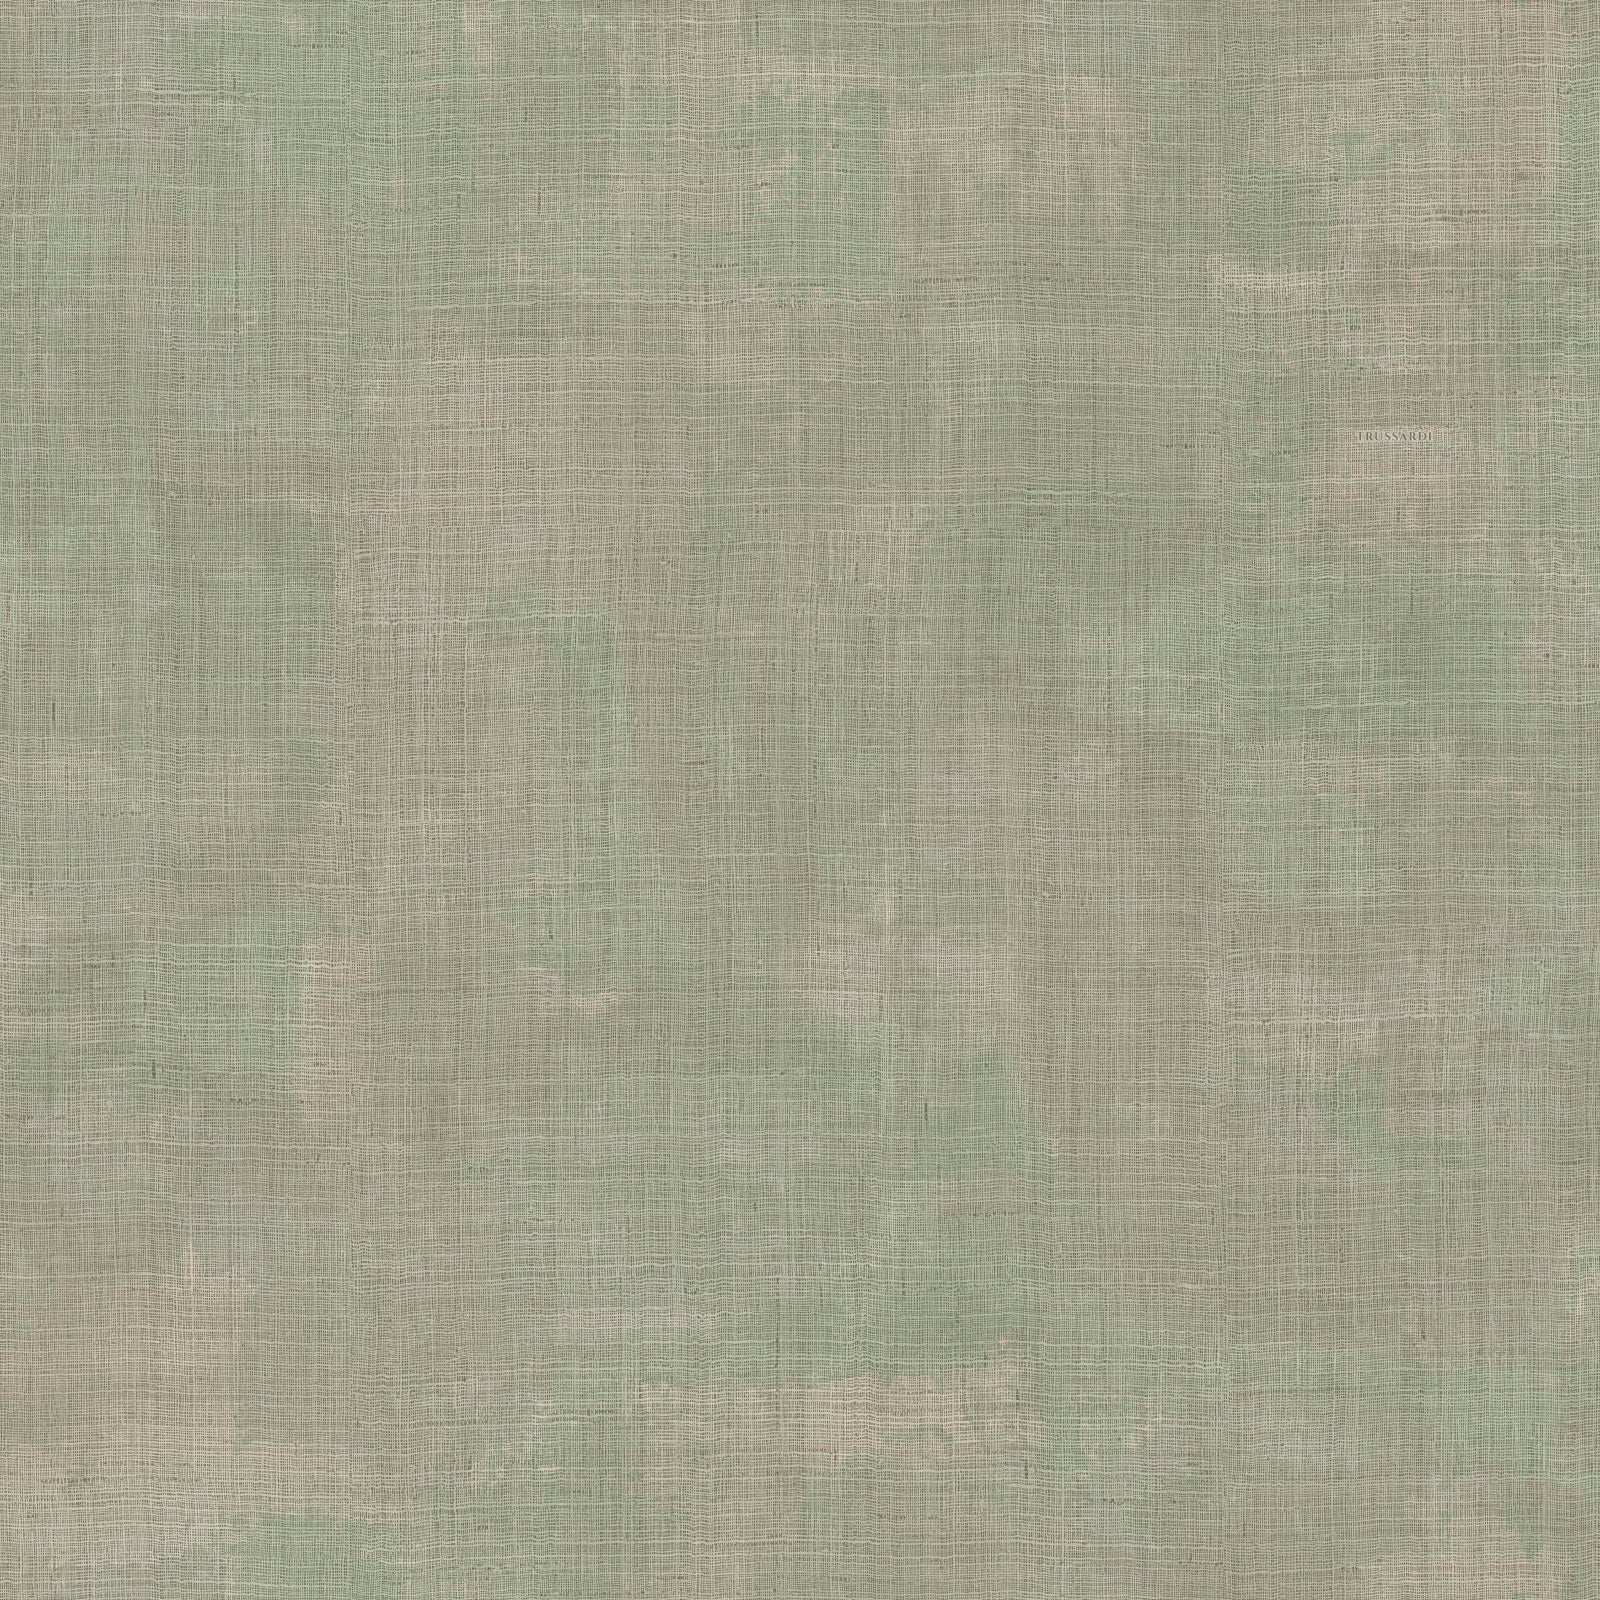 Z18919 Trussardi textured plain vinyl wallpaper – wallcoveringsmart